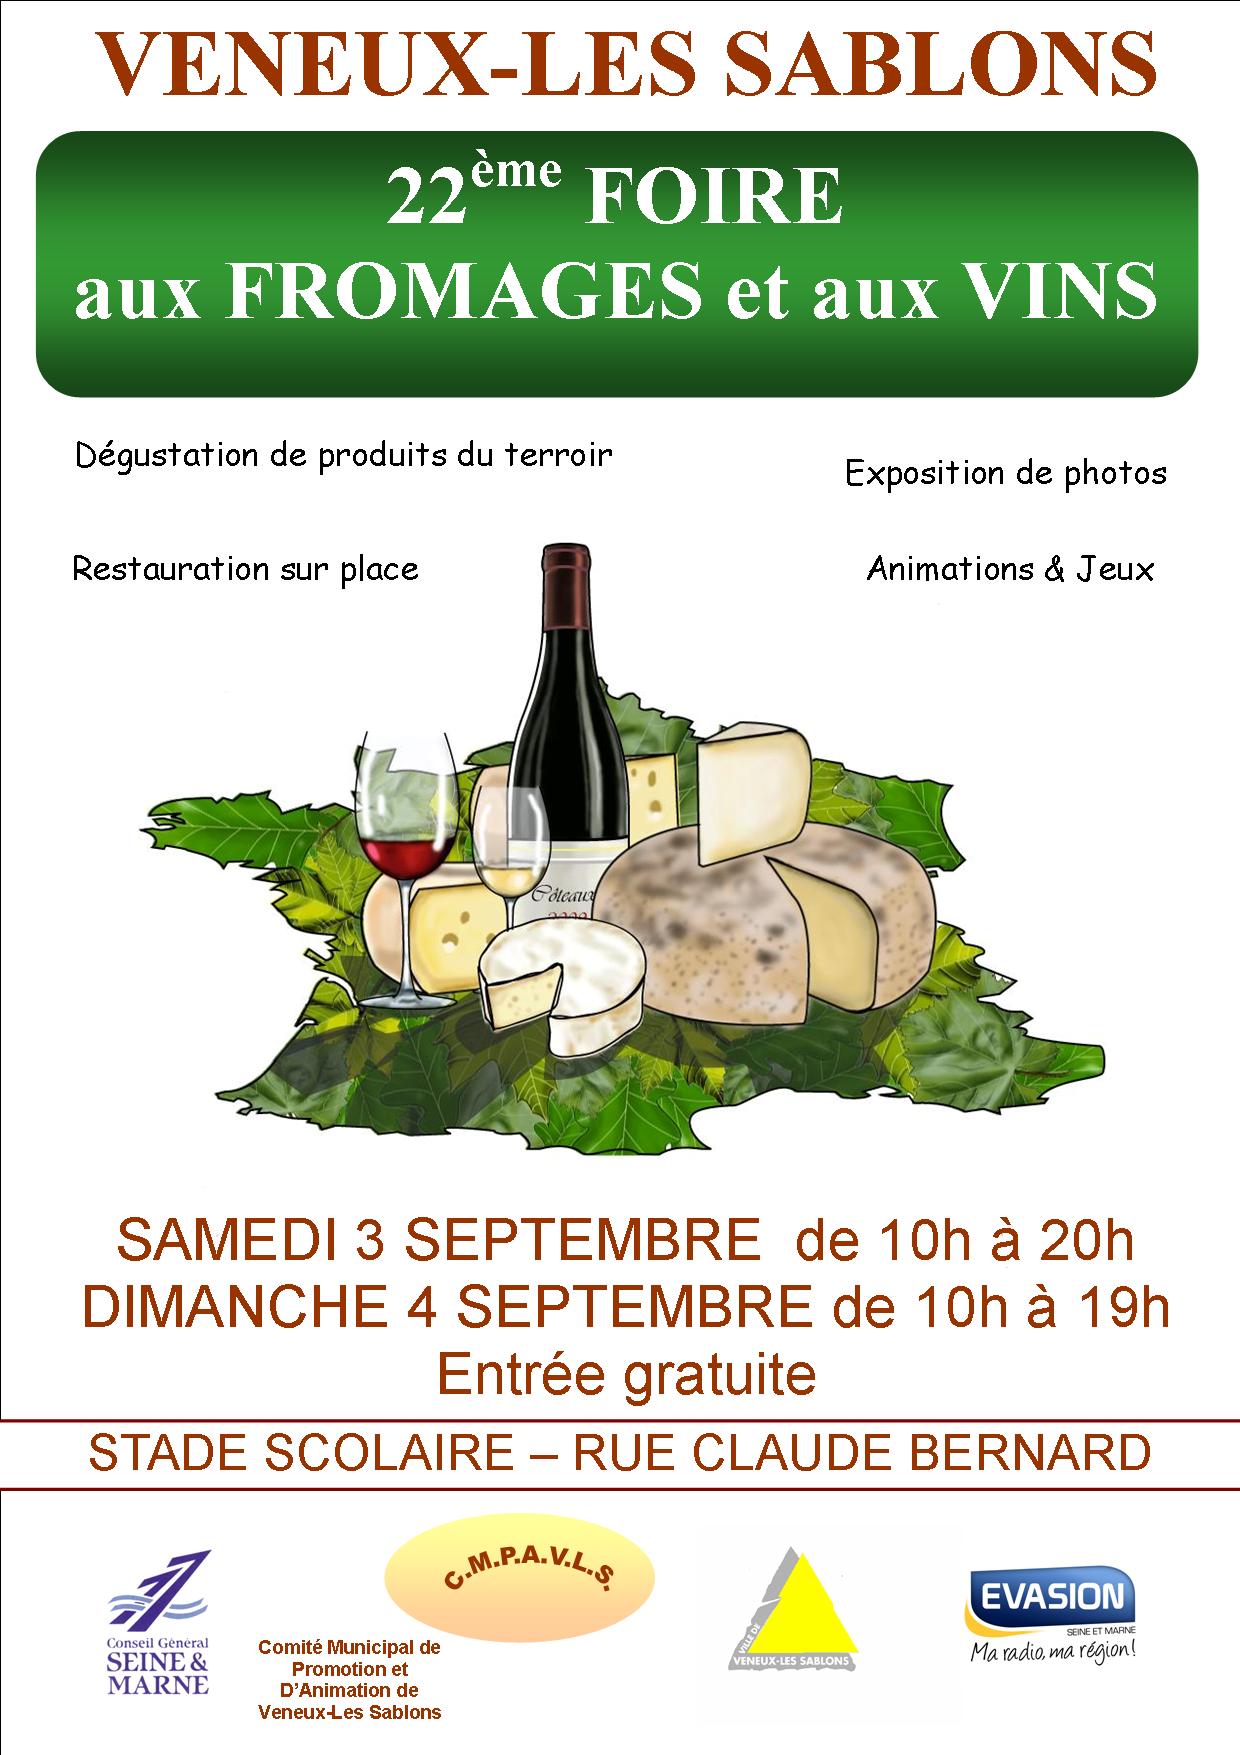 22ème Foire aux Fromages et aux Vins à Veneux les sablons Septembre 2011